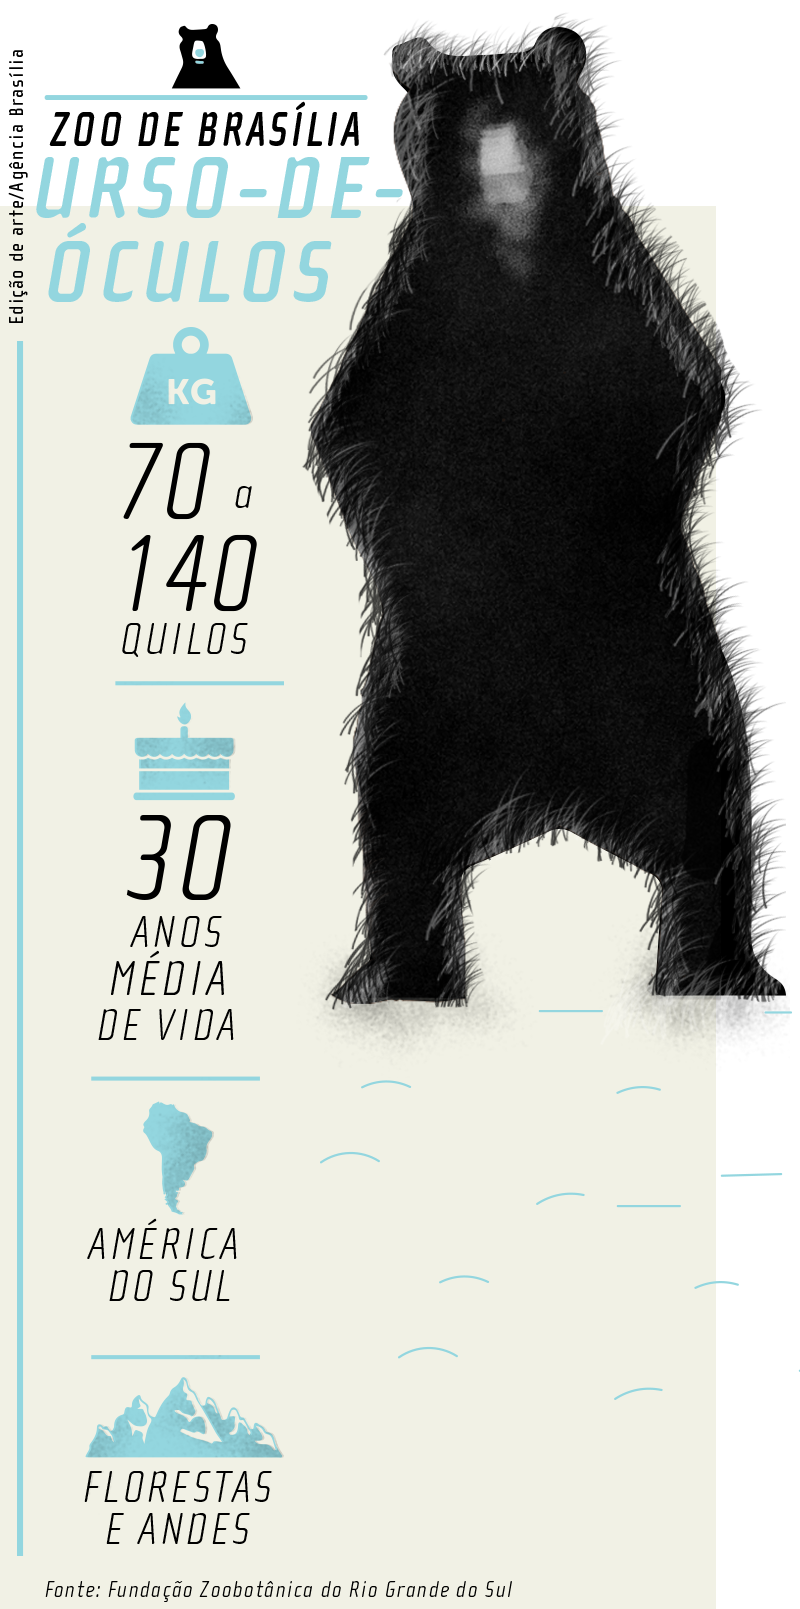 Urso de Óculos no zoo de Brasília